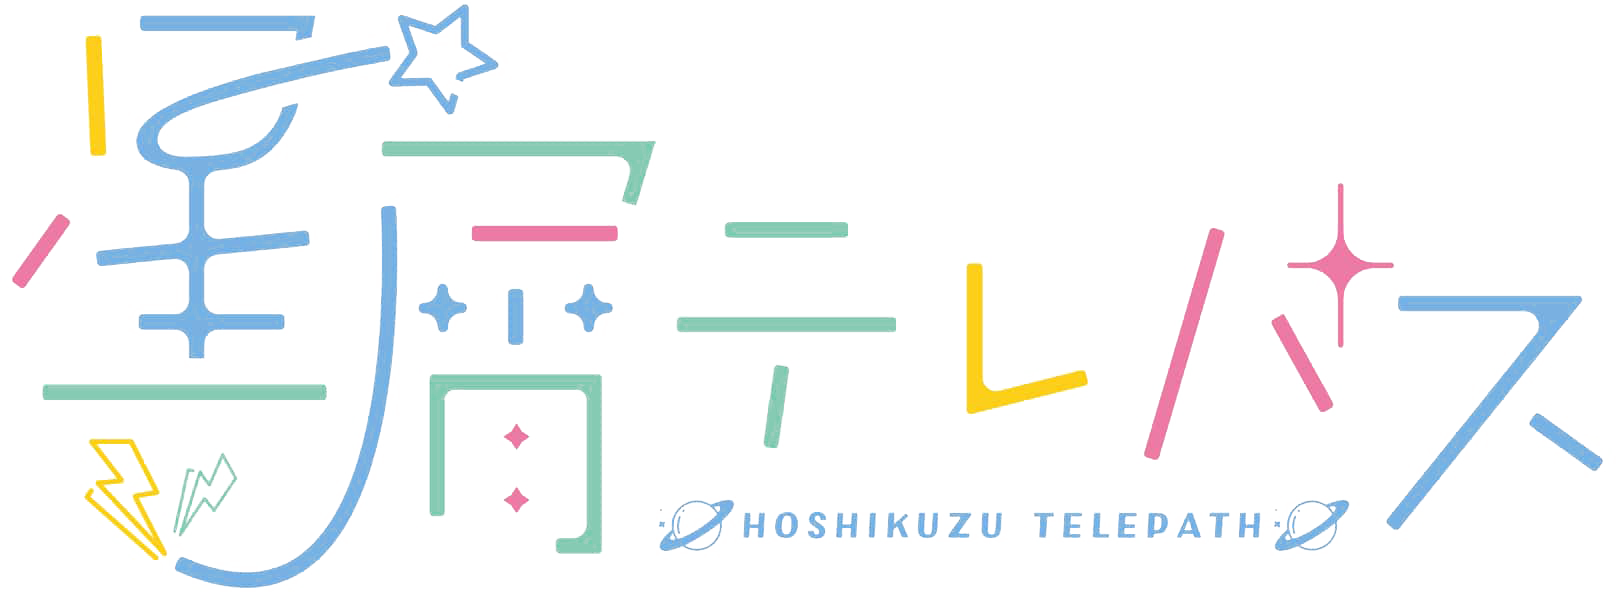 Hoshikuzu-logo.png